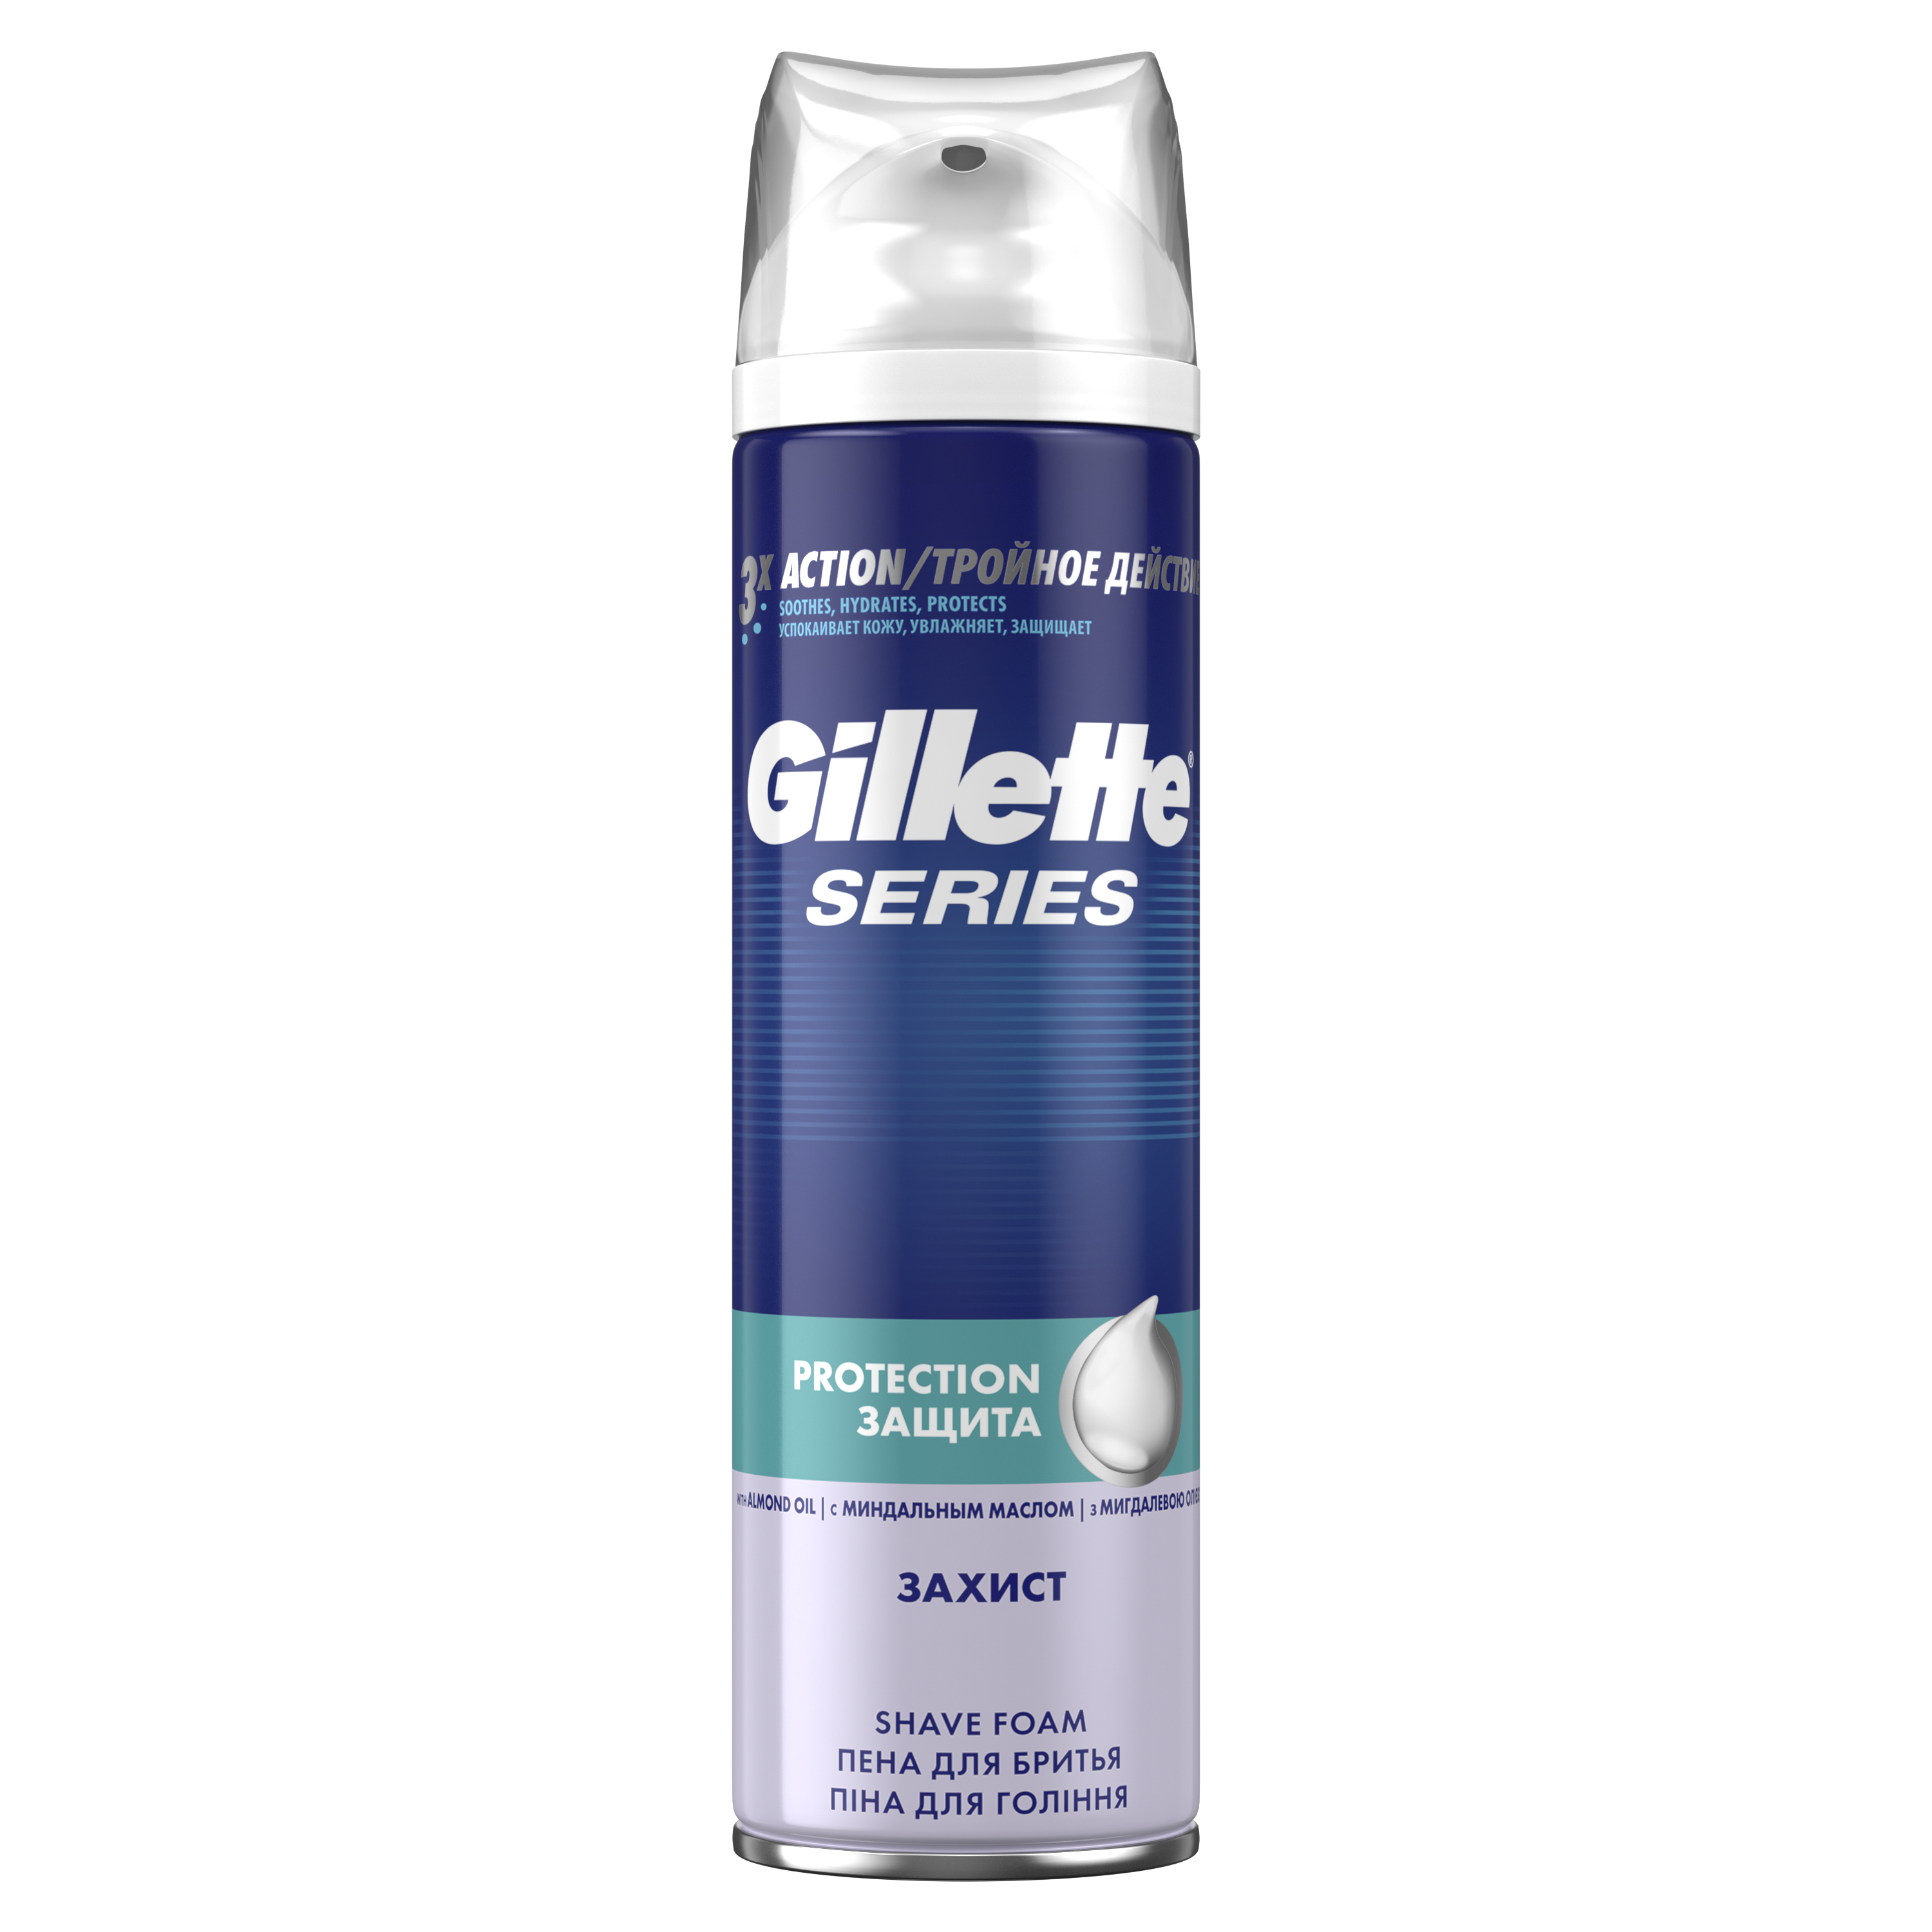 Піна для гоління Gillette Series Protection, 250 мл - фото 2